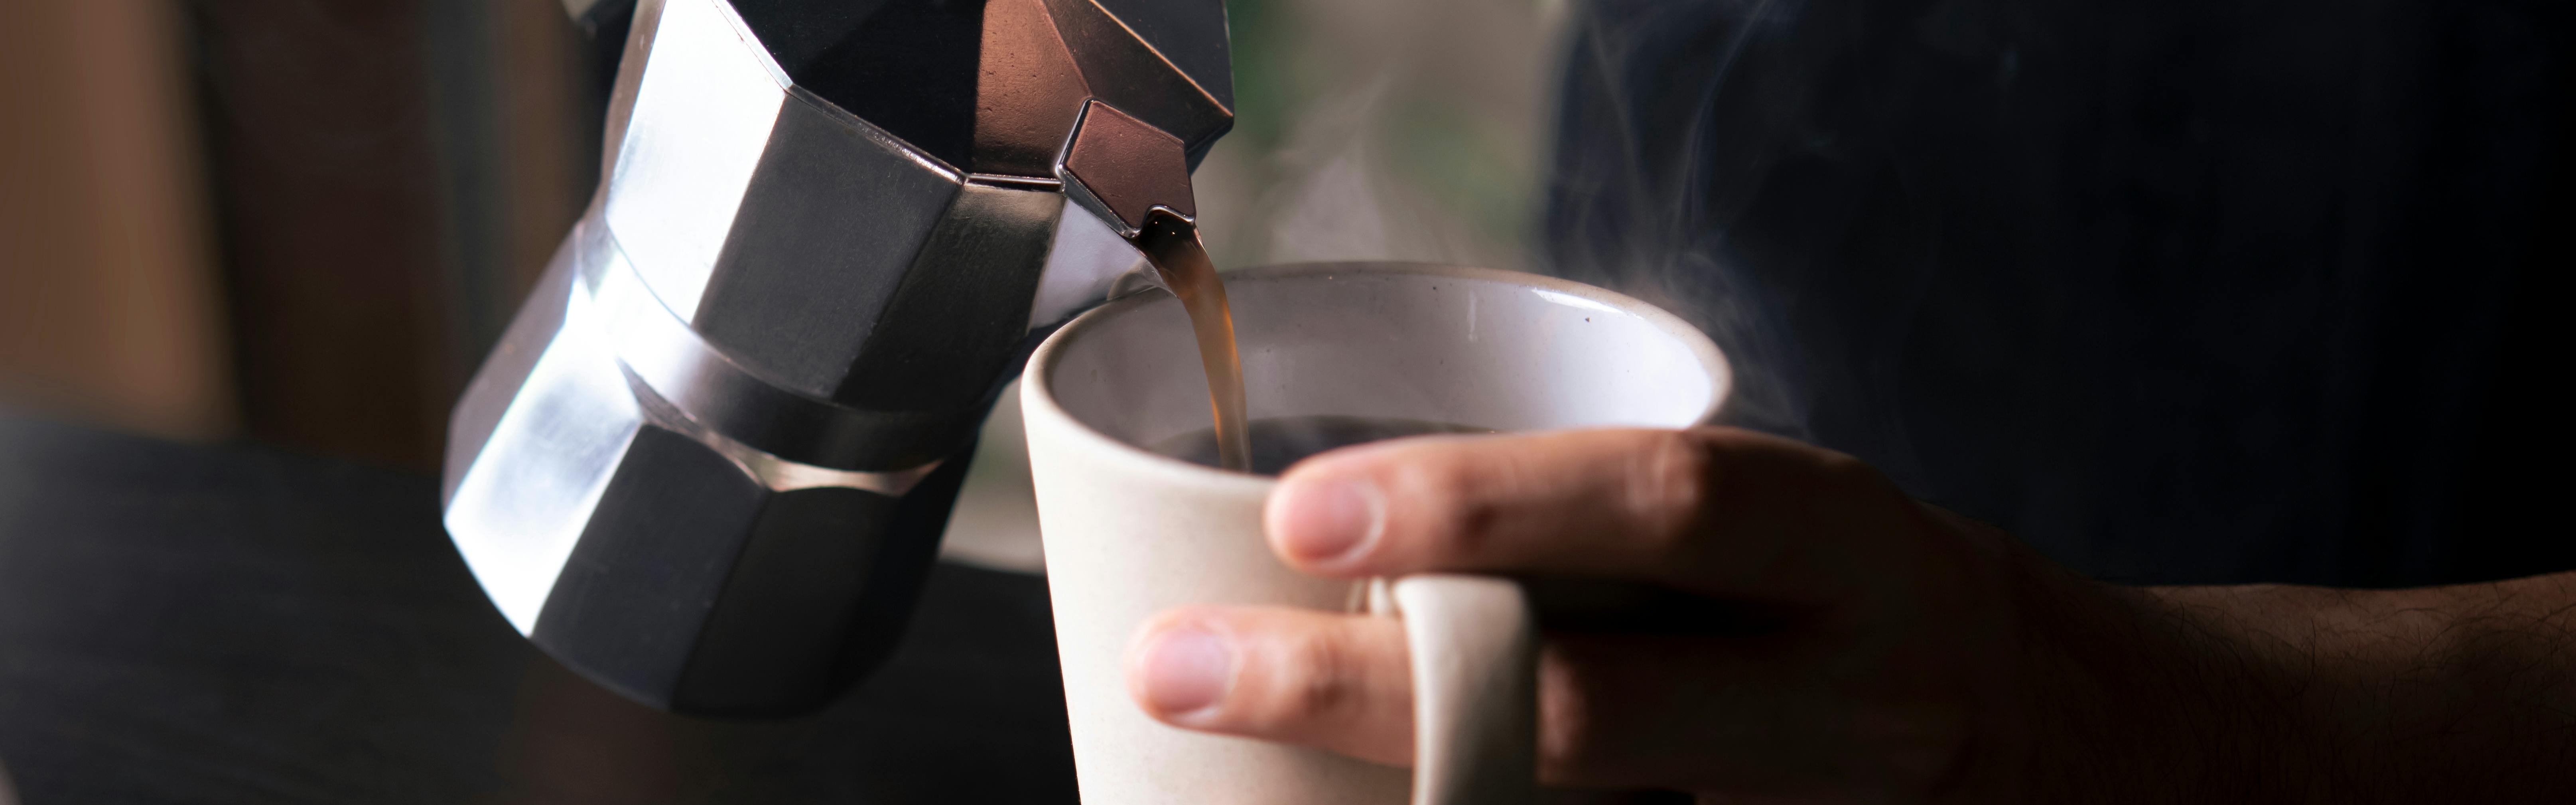 Upside Down Macchiato vs Latte: Unraveling the Espresso Mysteries